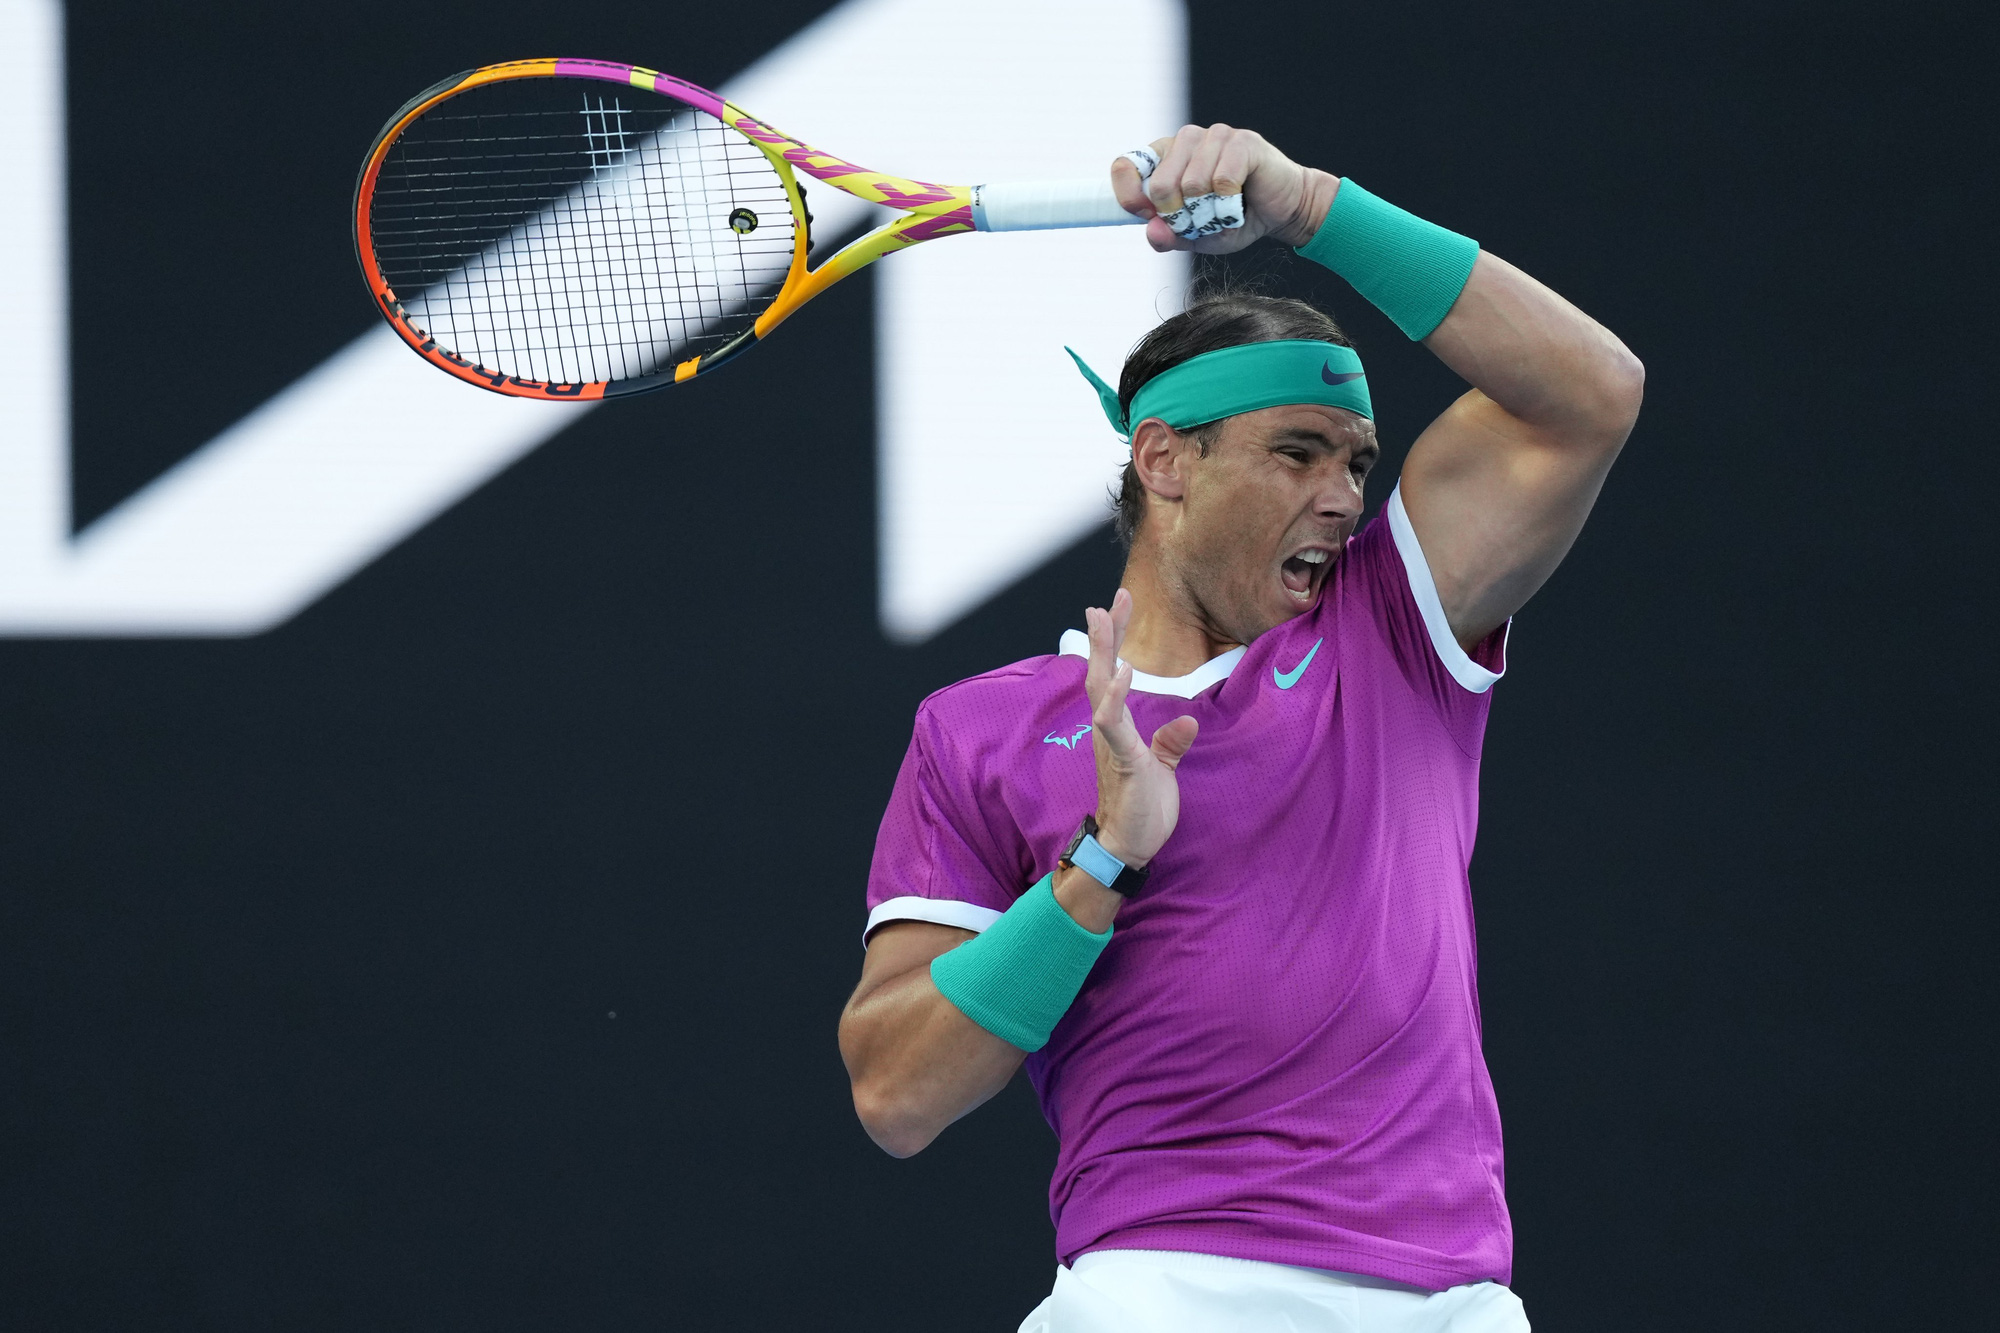 Rafael Nadal gục ngã trước cơ hội trở thành tay vợt vĩ đại nhất - Ảnh 5.